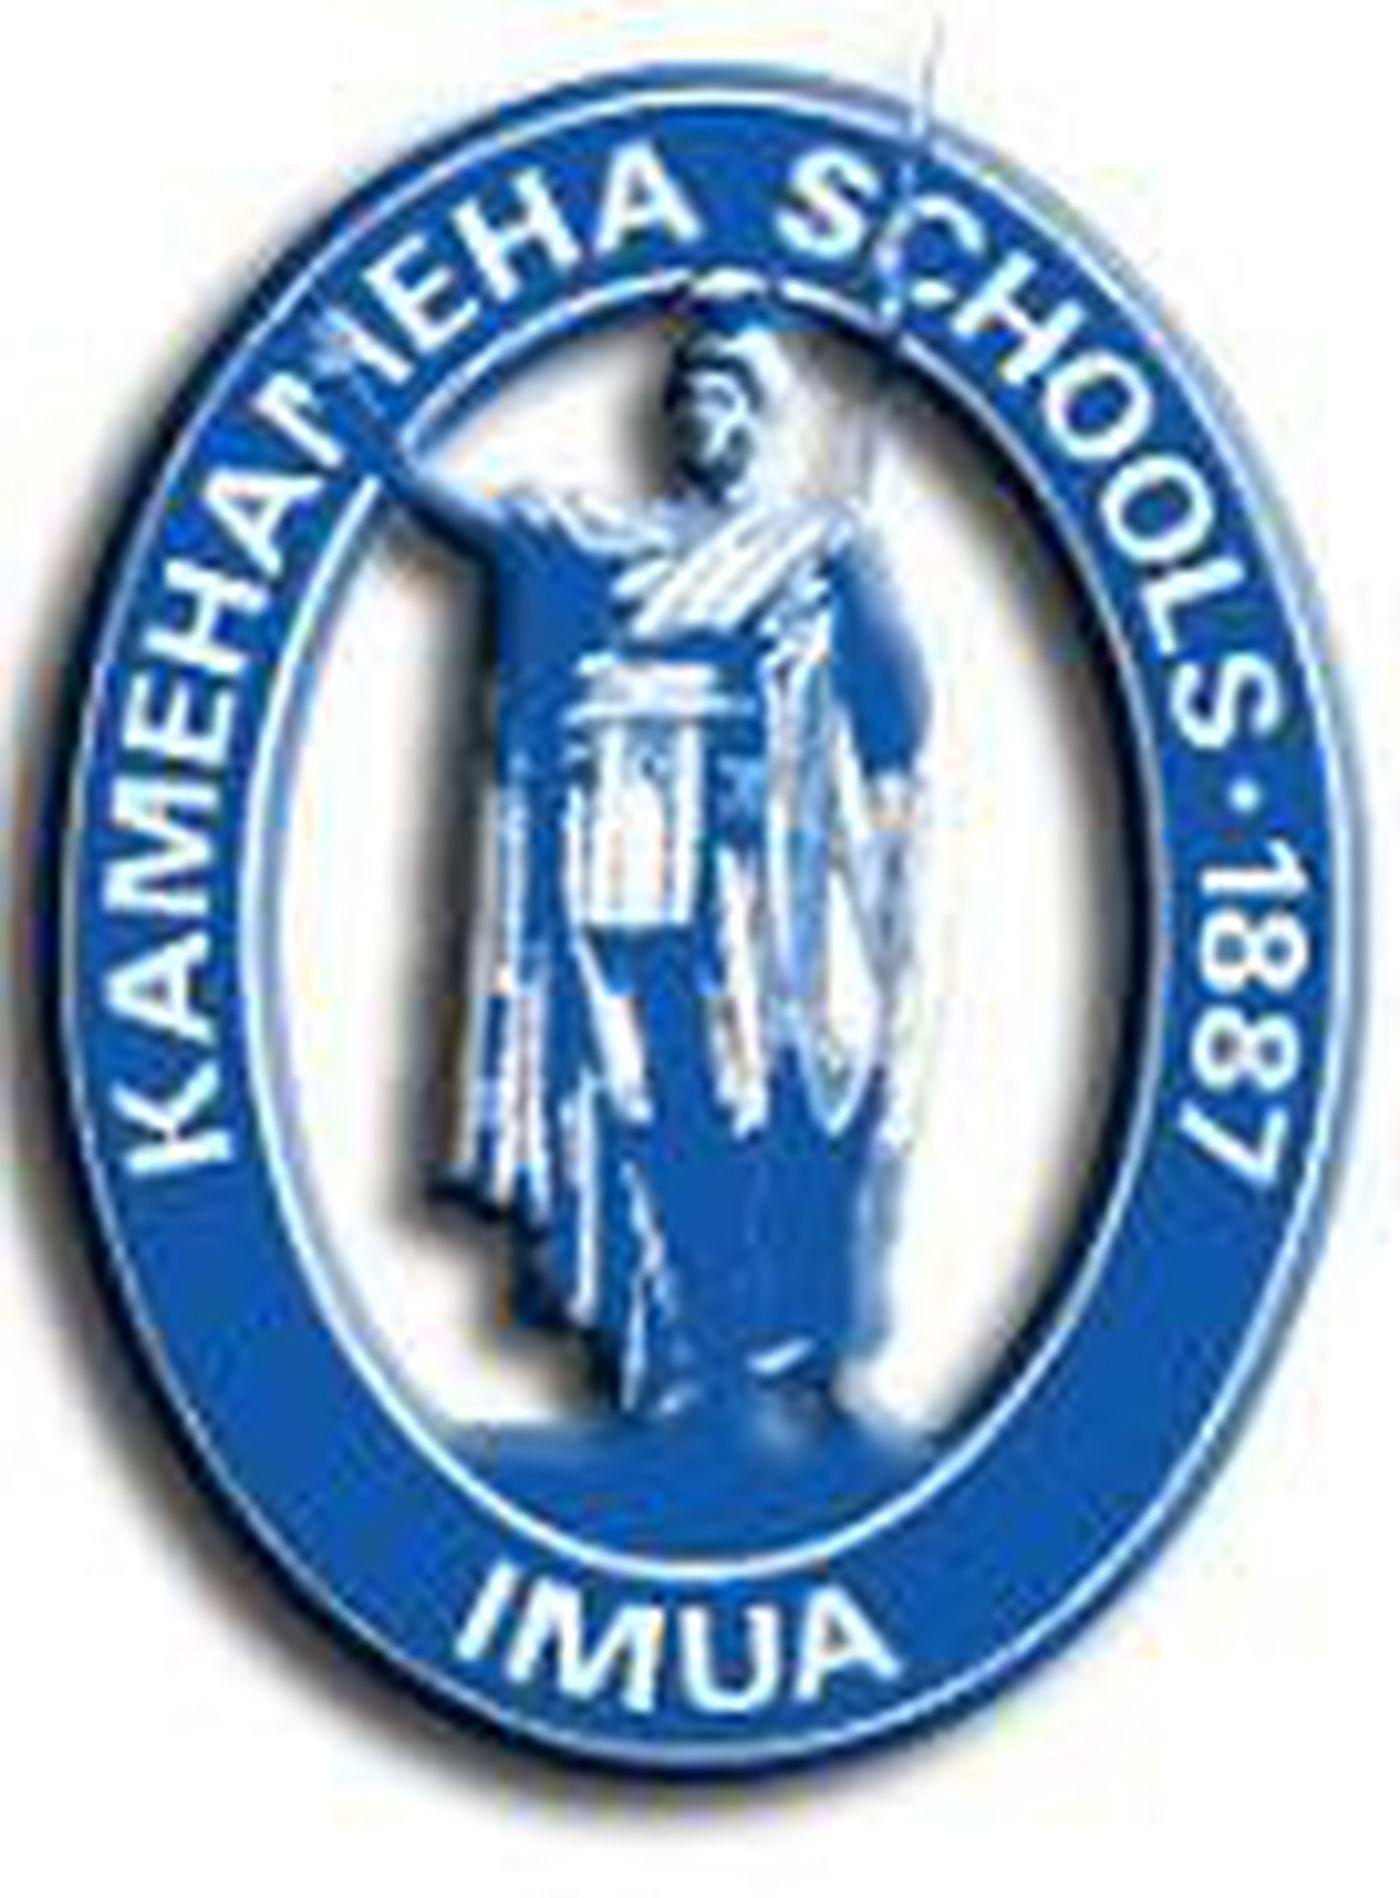 Kamehameha Logo - Attorney Asks Court to Finalize Kamehameha Ruling